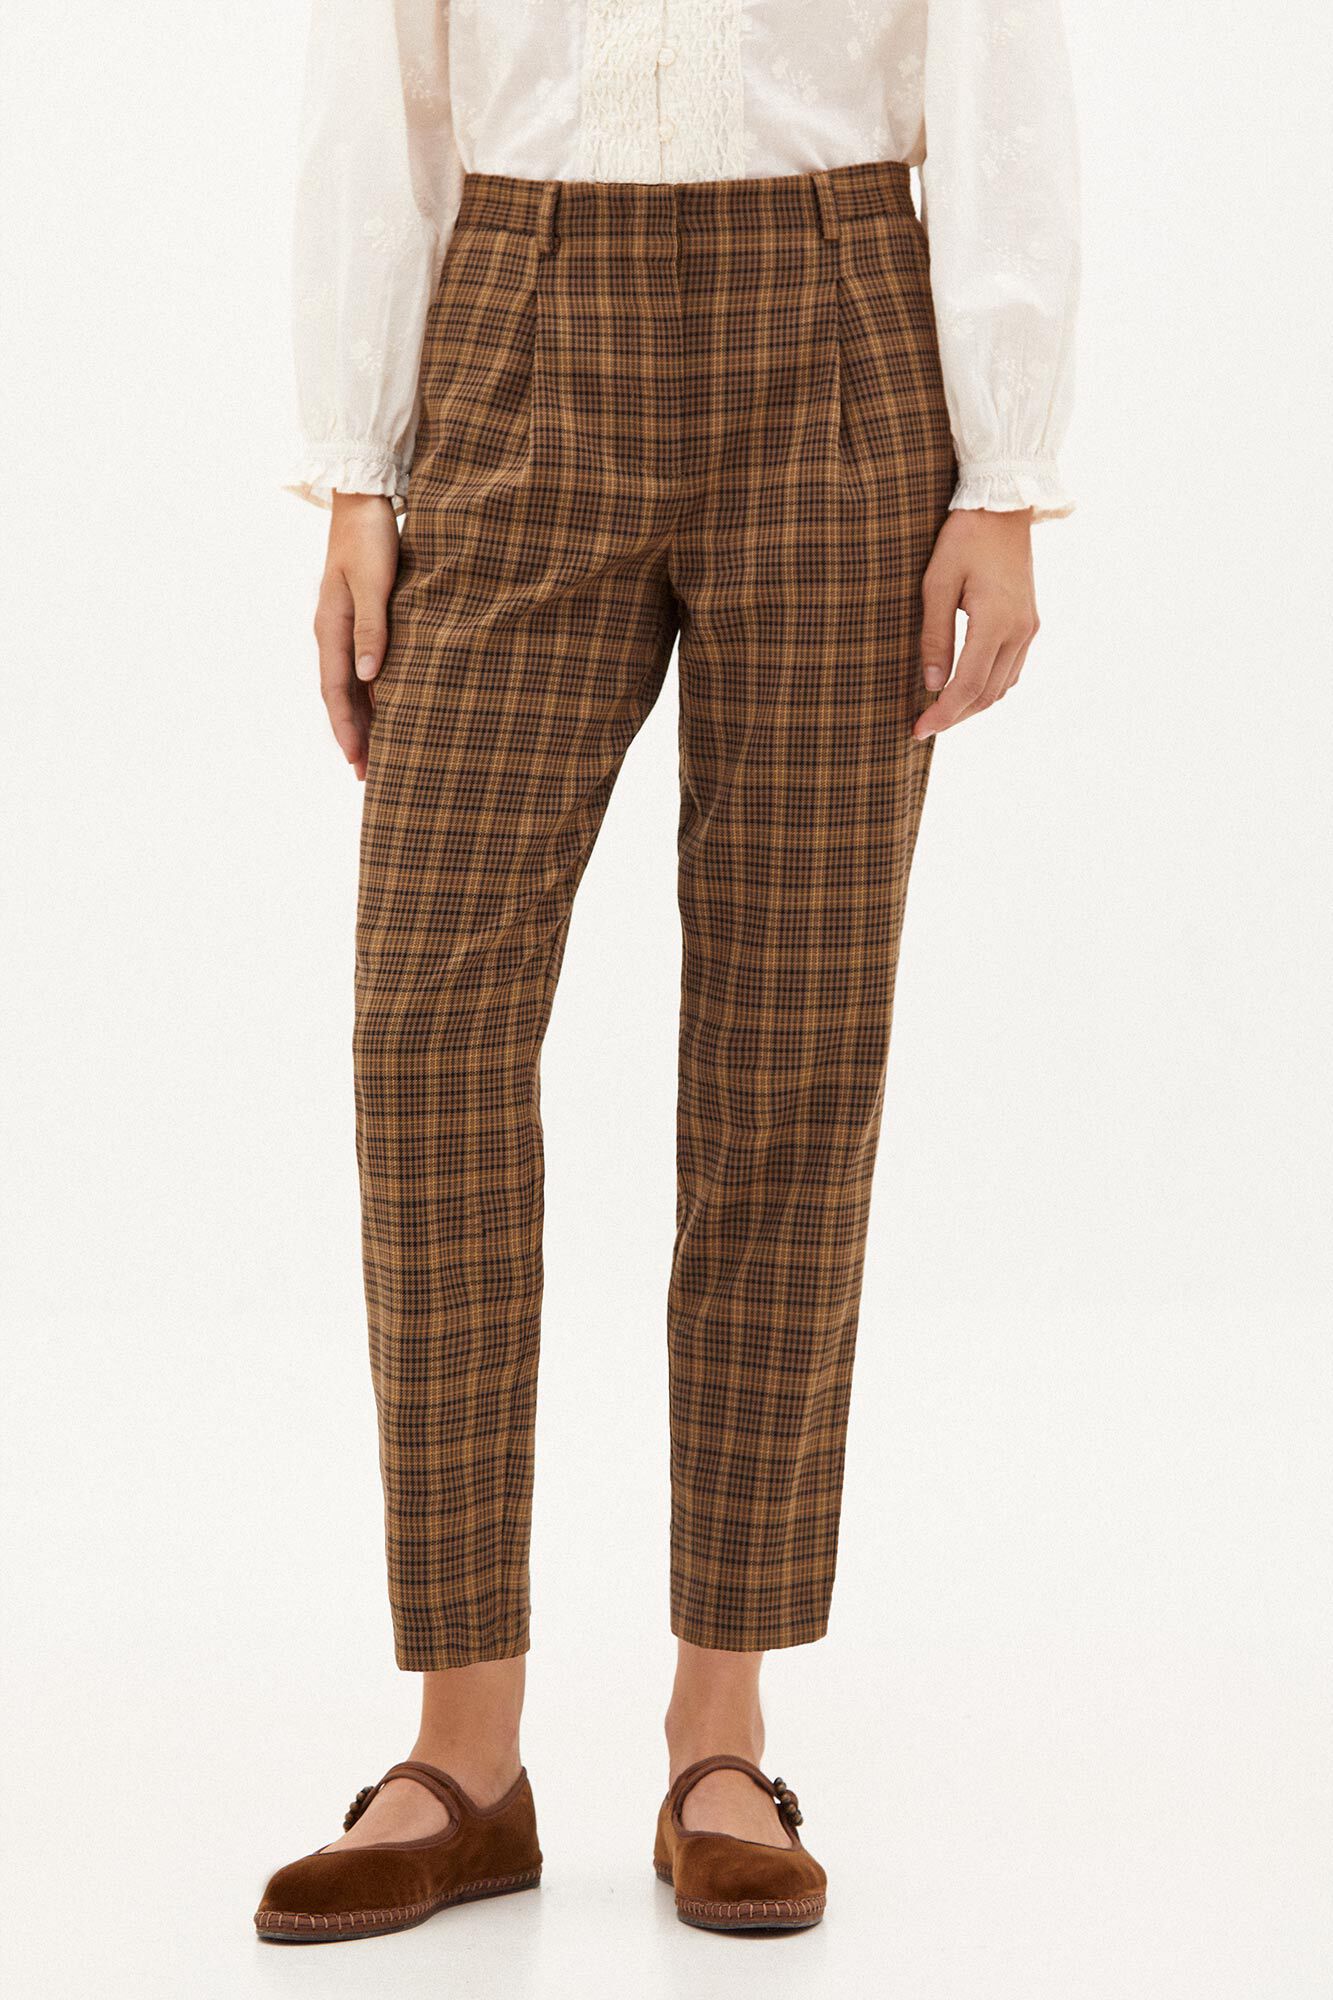 Unique Bargains Women's Plaid Trousers Button Casual Tartan Check Work  Pants S Dark Brown - Walmart.com